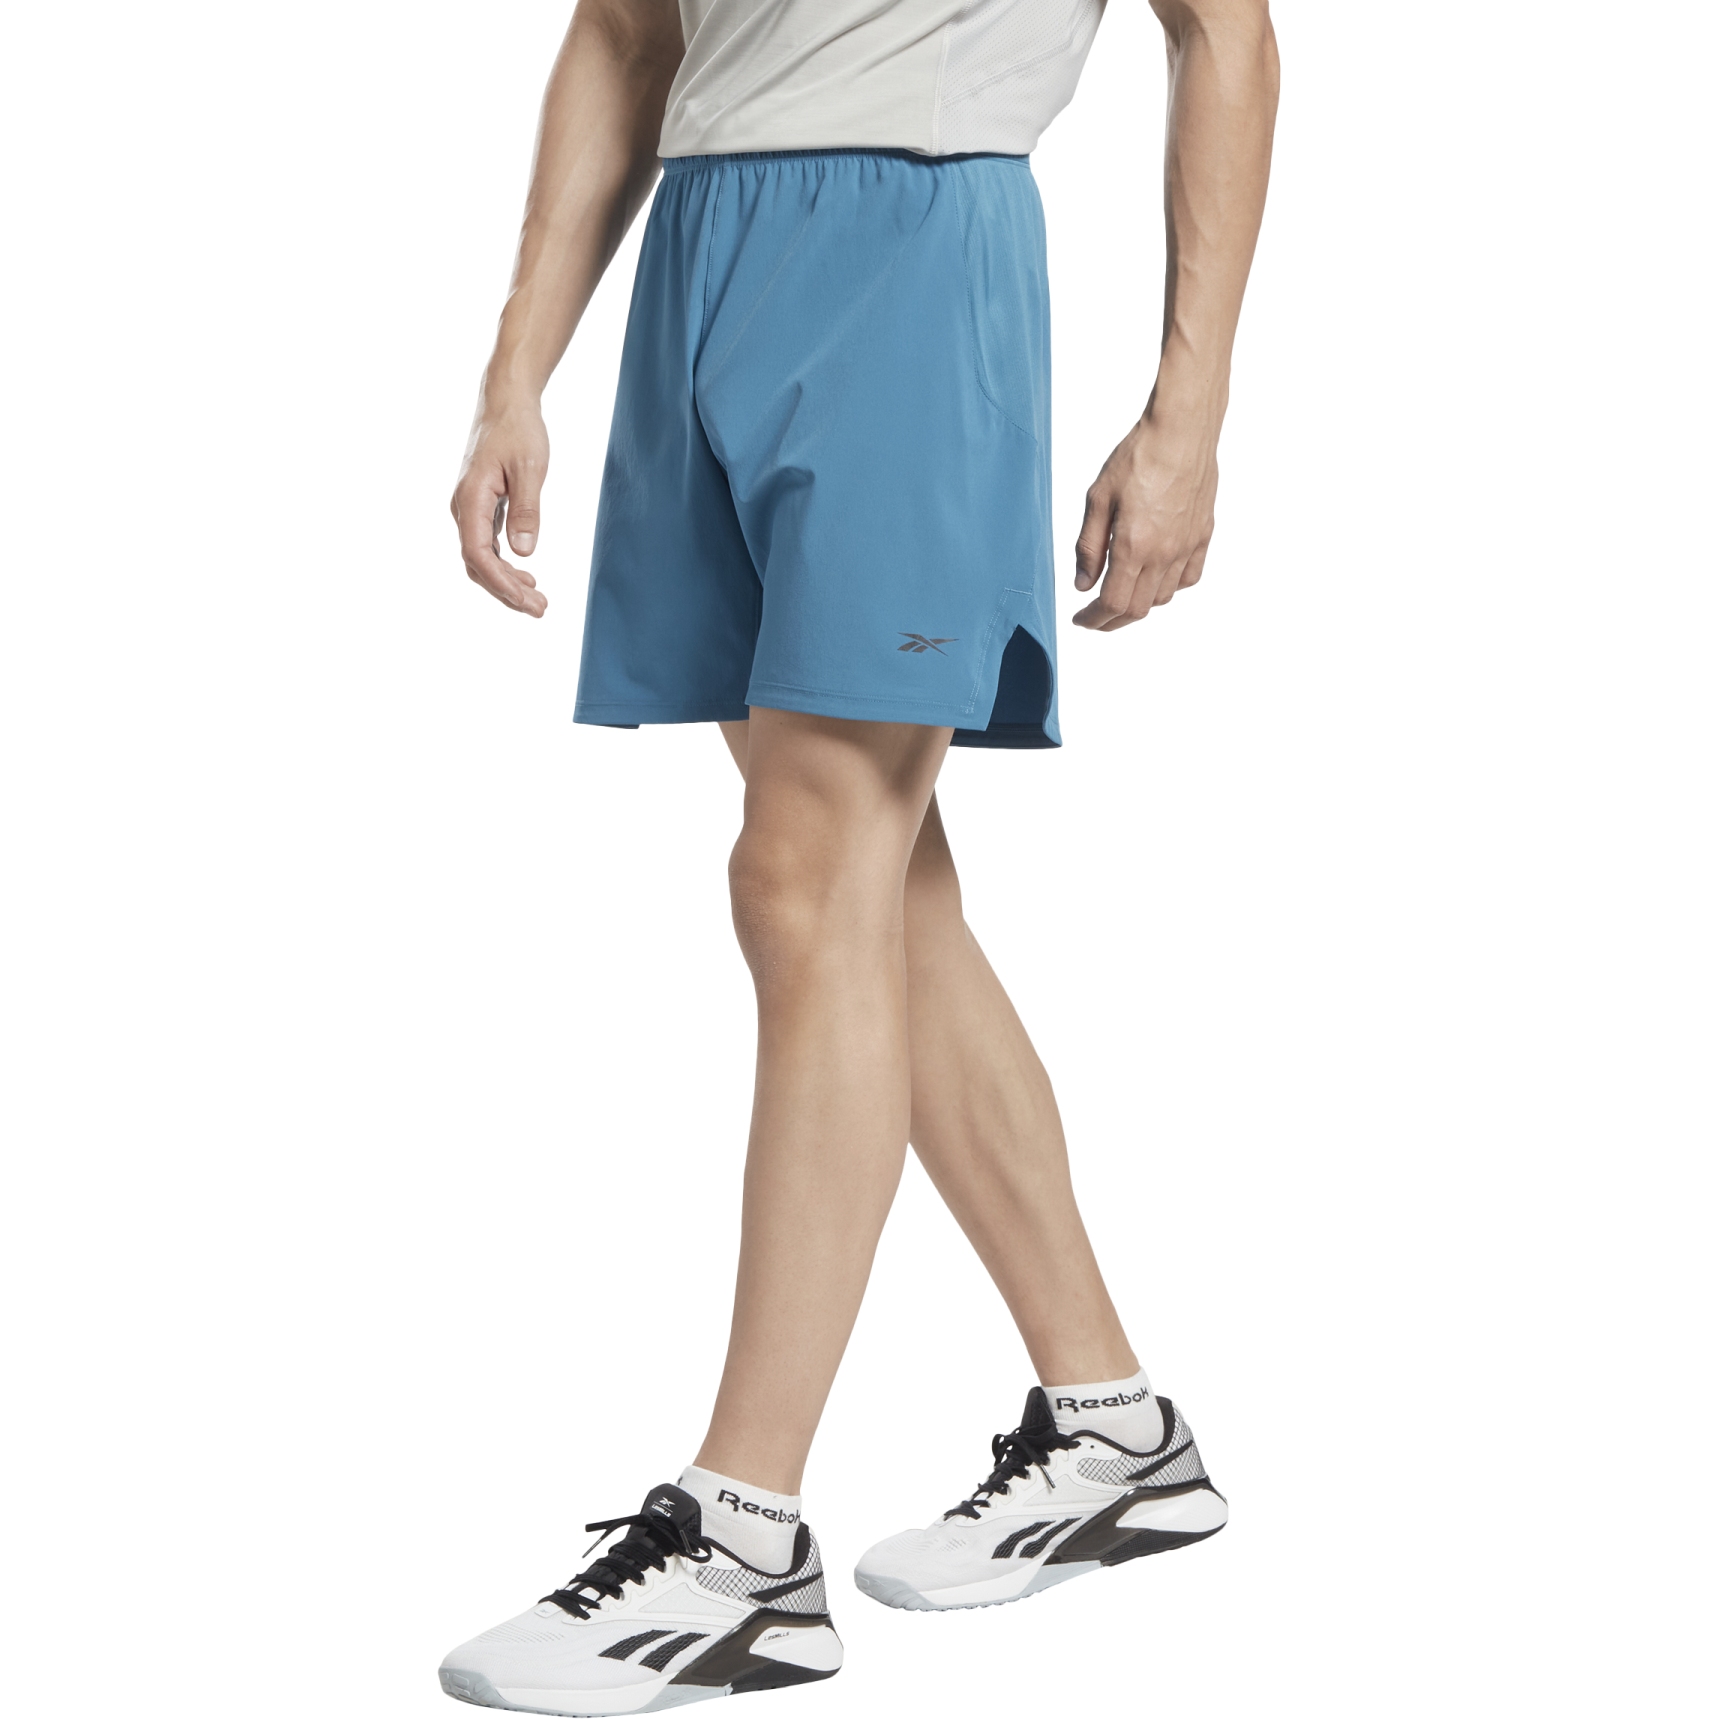 Produktbild von Reebok Strength 3.0 Shorts Herren - steely blue